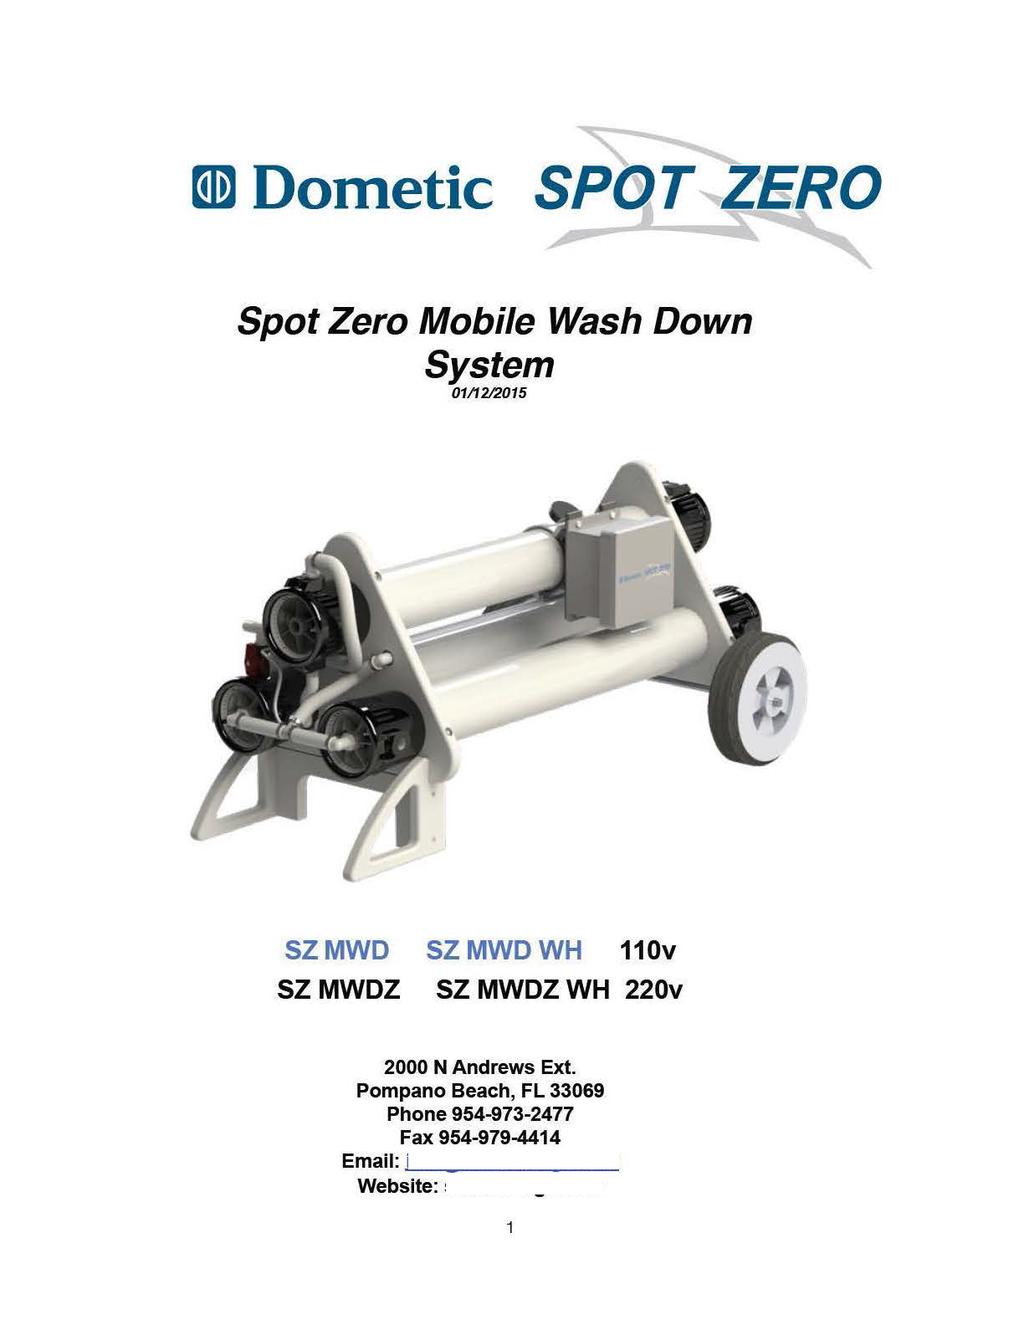 md Dometic SPBT ZERO Spot Zero Mobile Wash Down System 0111212015 SZMWD SZMWDWH 110v SZ MWDZ SZ MWDZ WH 220v 2000 N